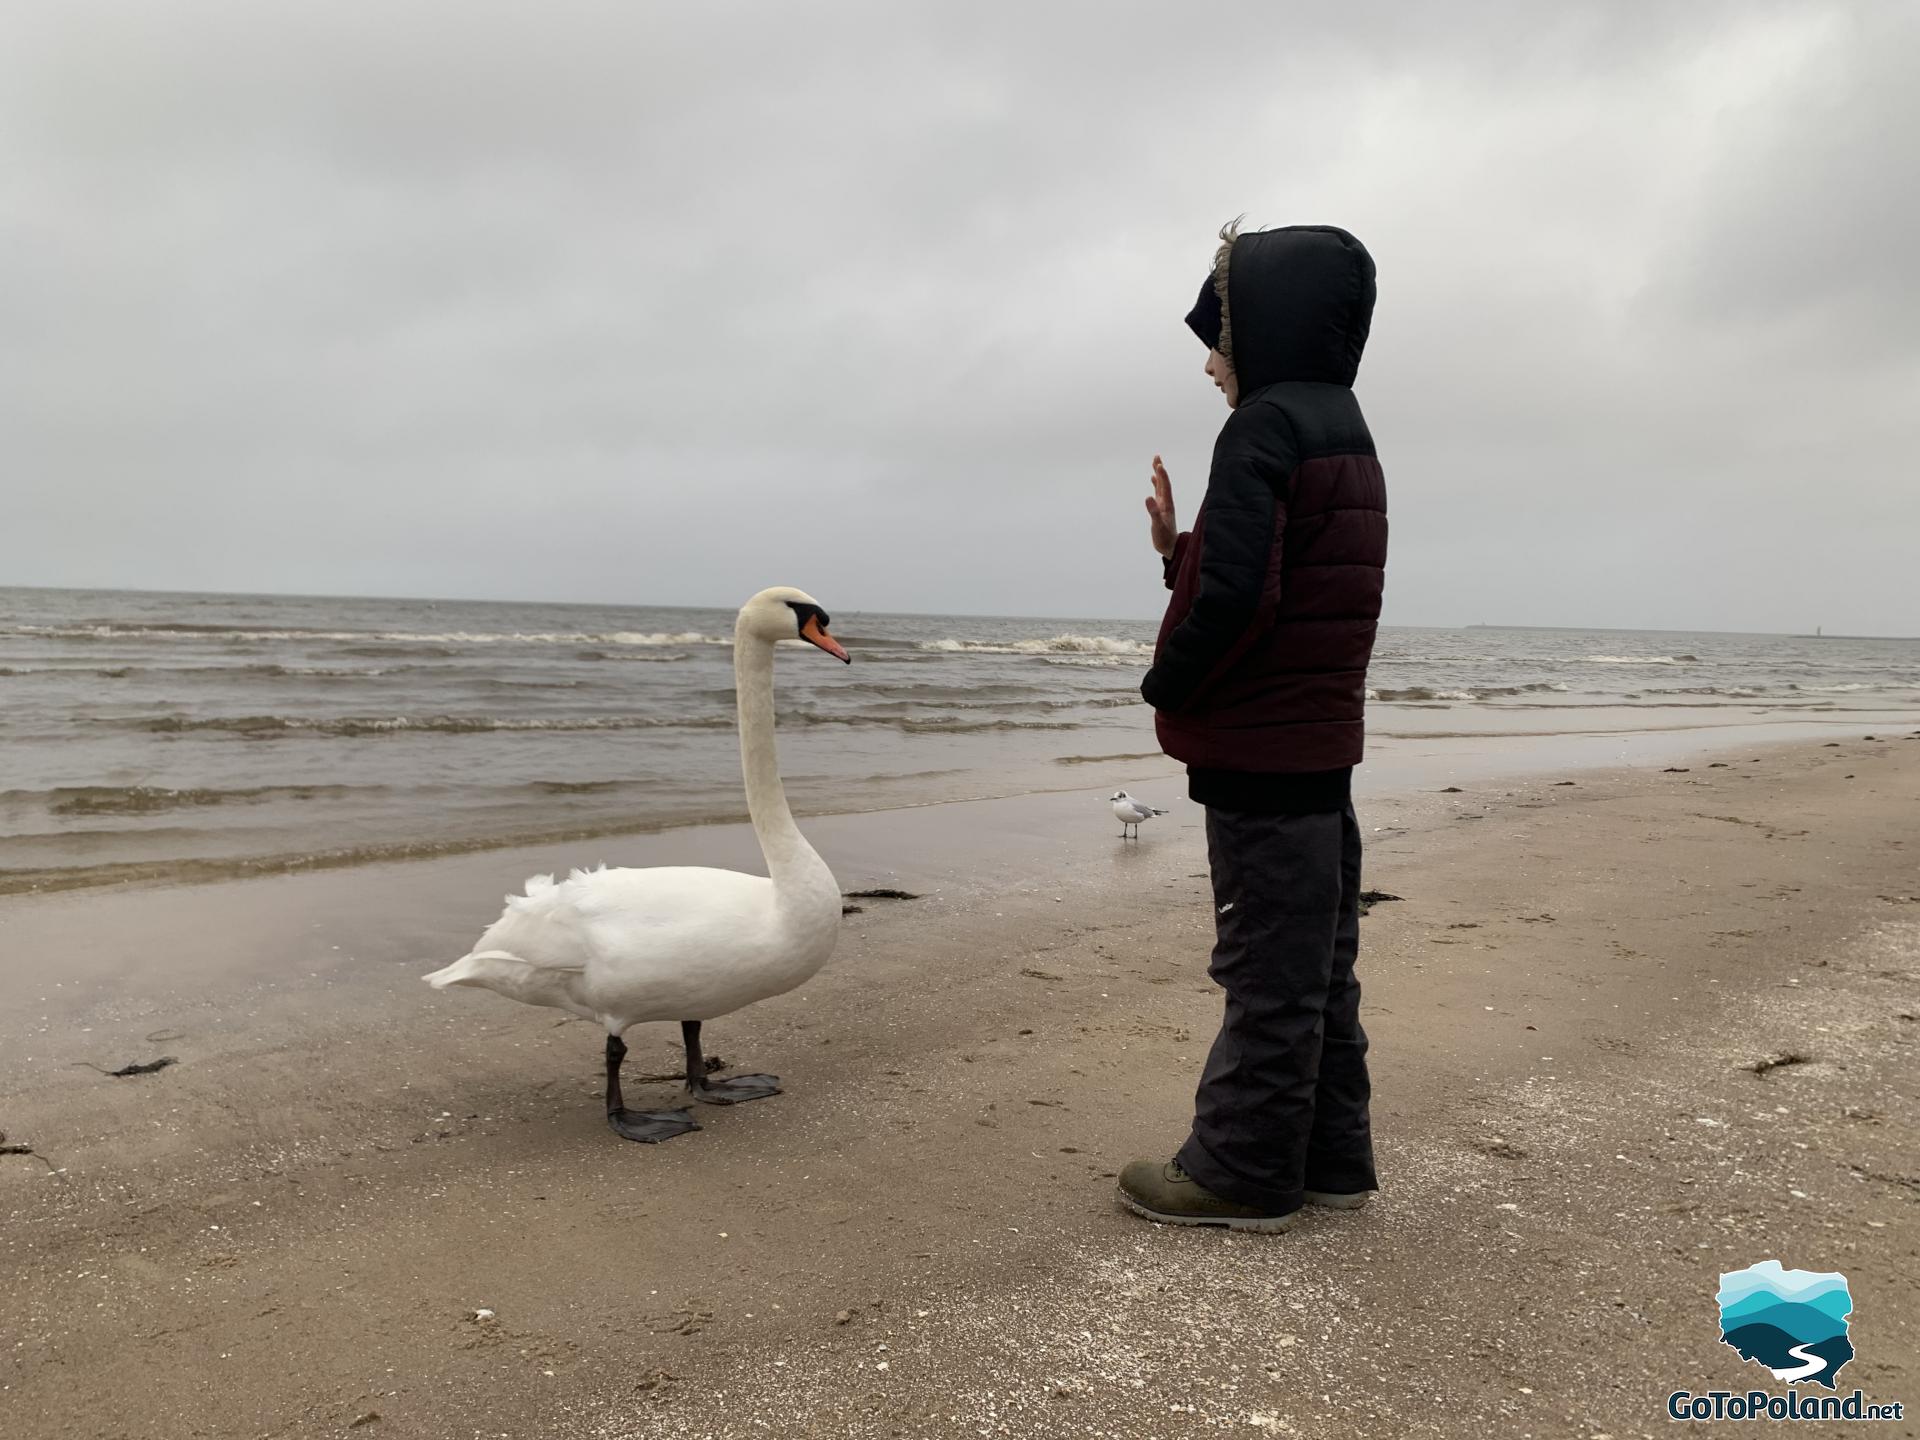 a boy and a swan on the beach